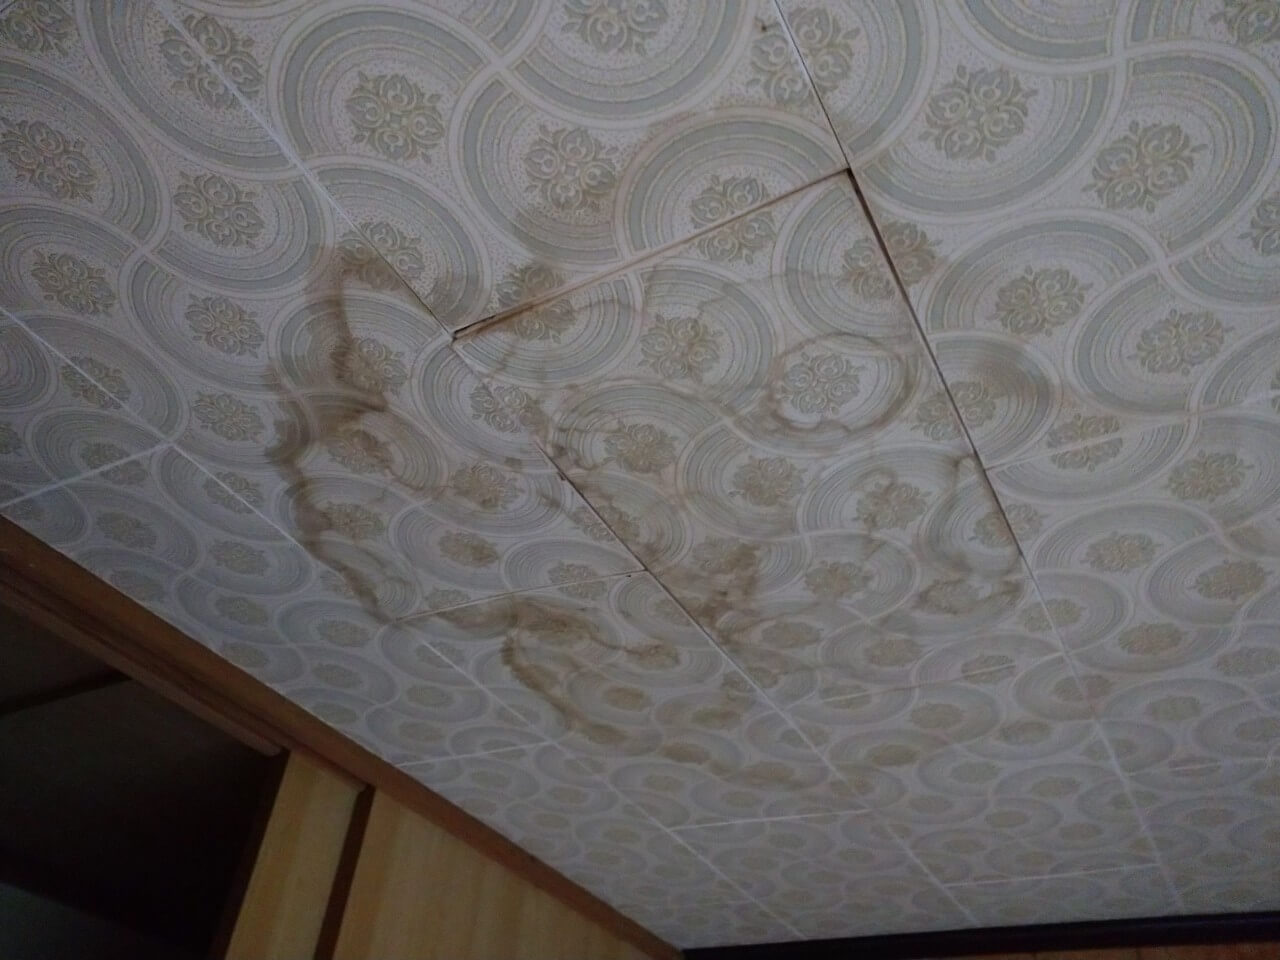 雨漏りの影響で天井にできた染みや水跡がある。